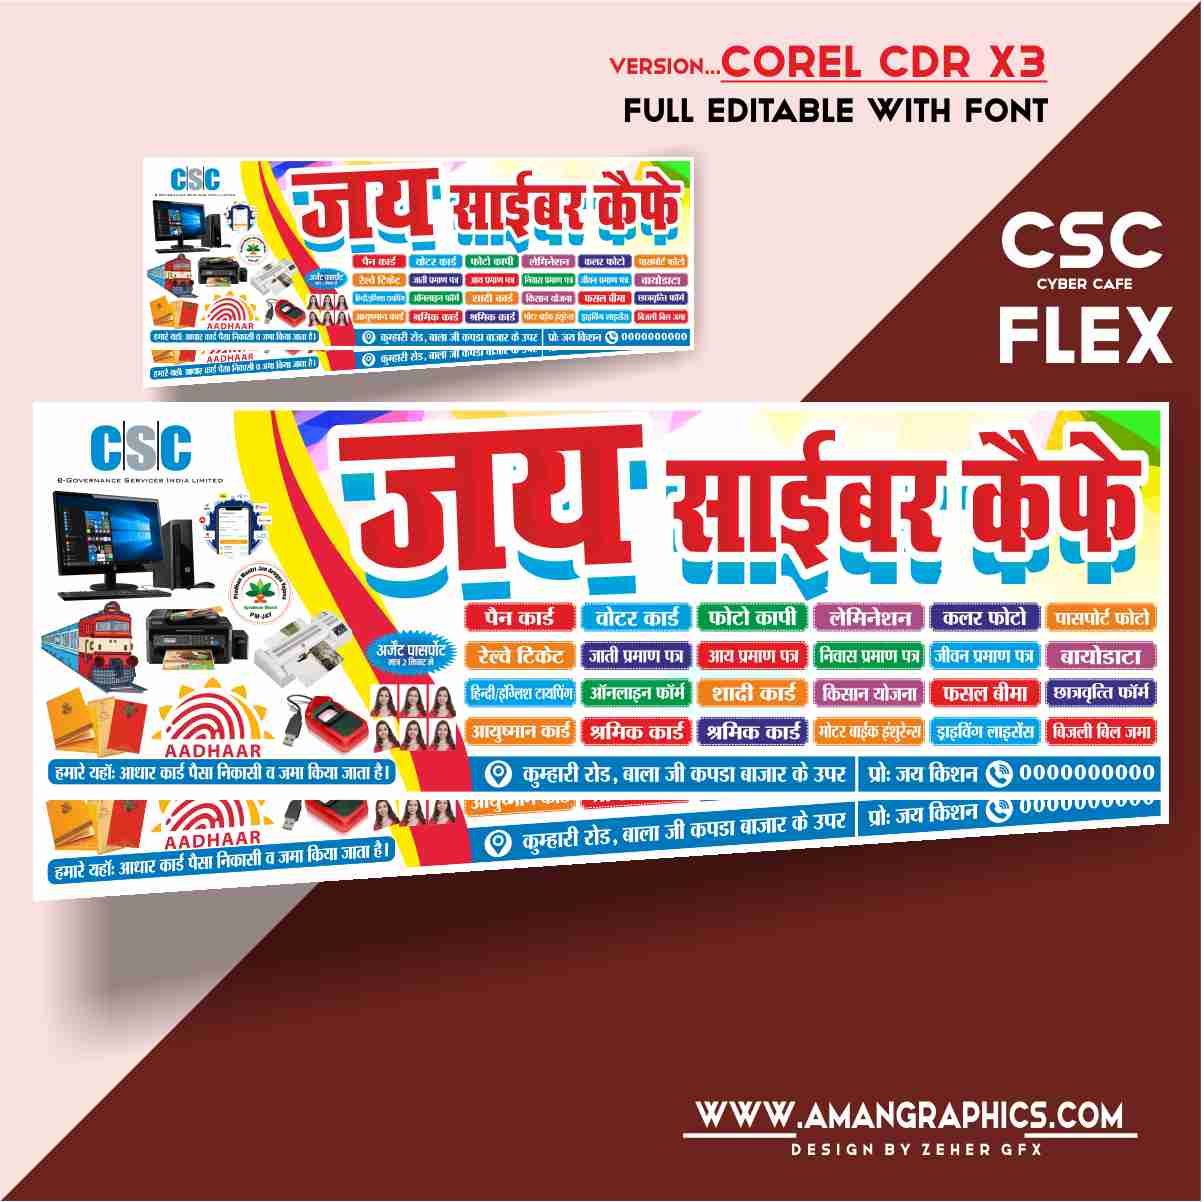 Smart Catalog Communication Csc in Batamaloo,Srinagar - Best Printing  Services in Srinagar - Justdial